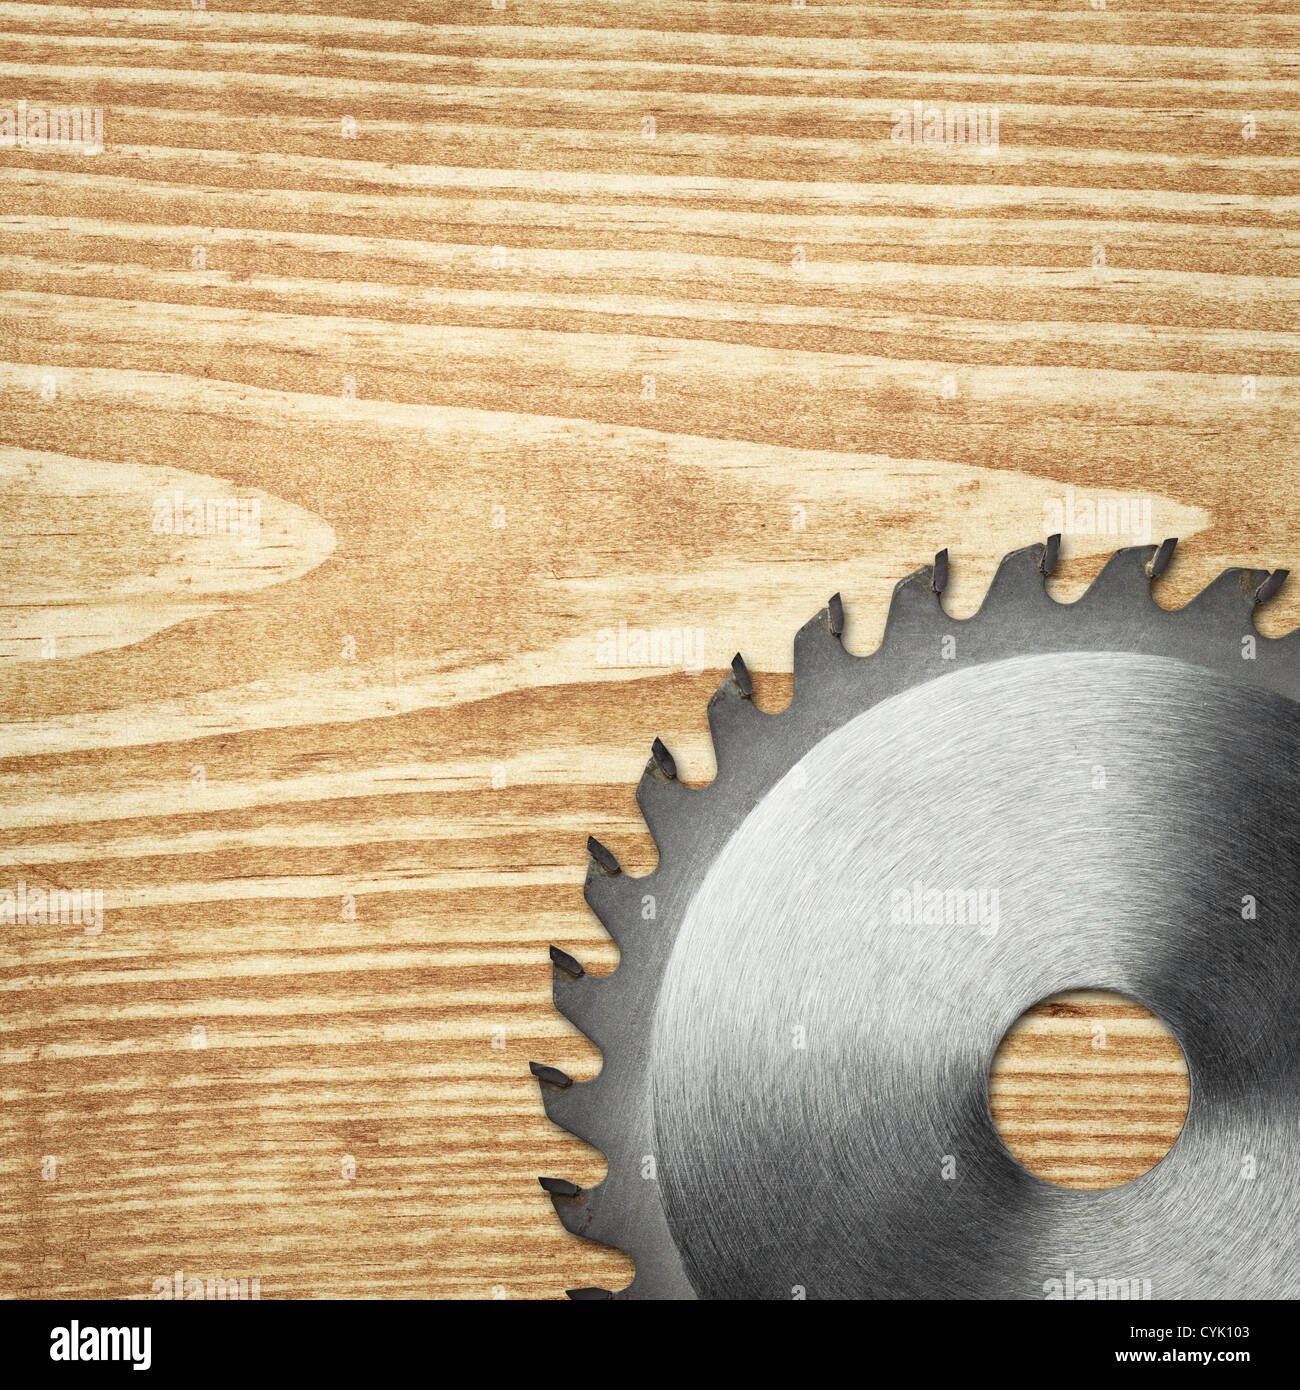 Circular saw blade on a wood board. Stock Photo